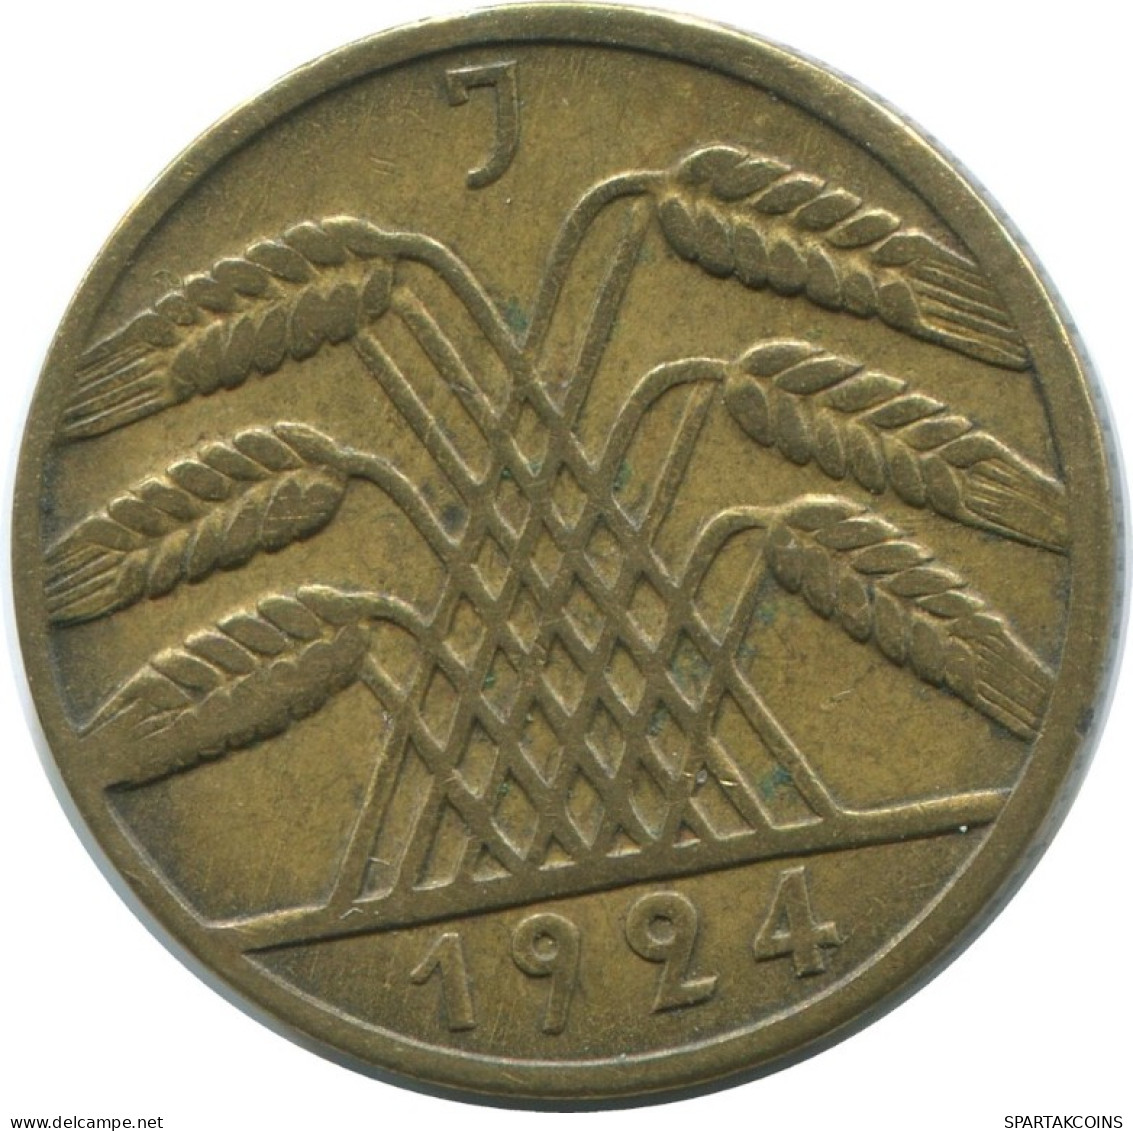 10 REICHSPFENNIG 1924 J DEUTSCHLAND Münze GERMANY #AE360.D.A - 10 Renten- & 10 Reichspfennig